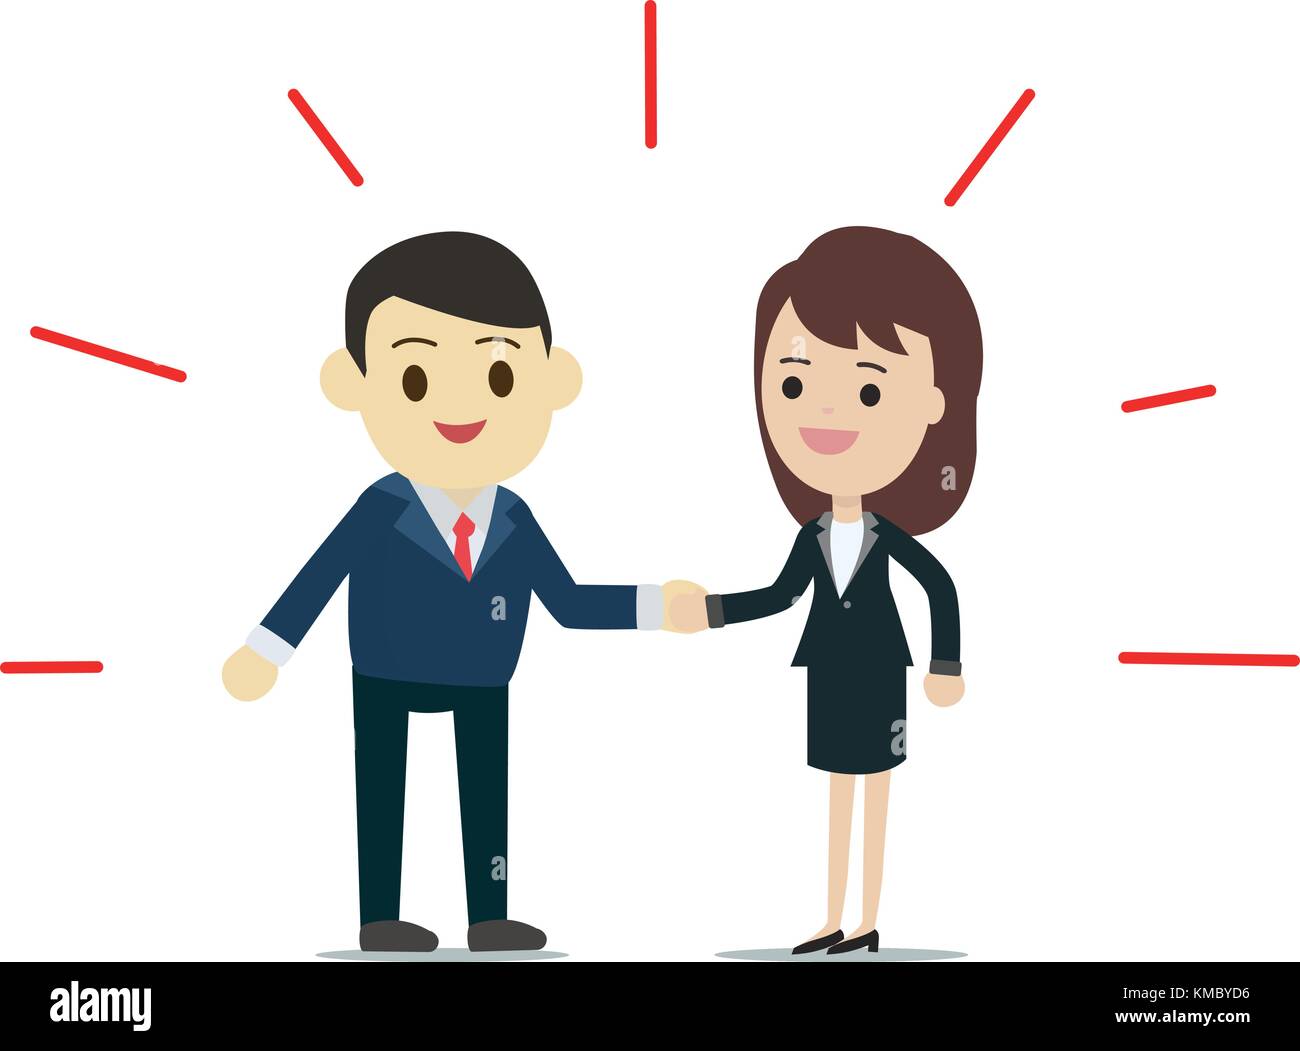 Der Mann und die Frau die Hände schütteln mit abstrakten rote Linie, um sie herum, Business kontakt Konzept Vector Illustration Stock Vektor